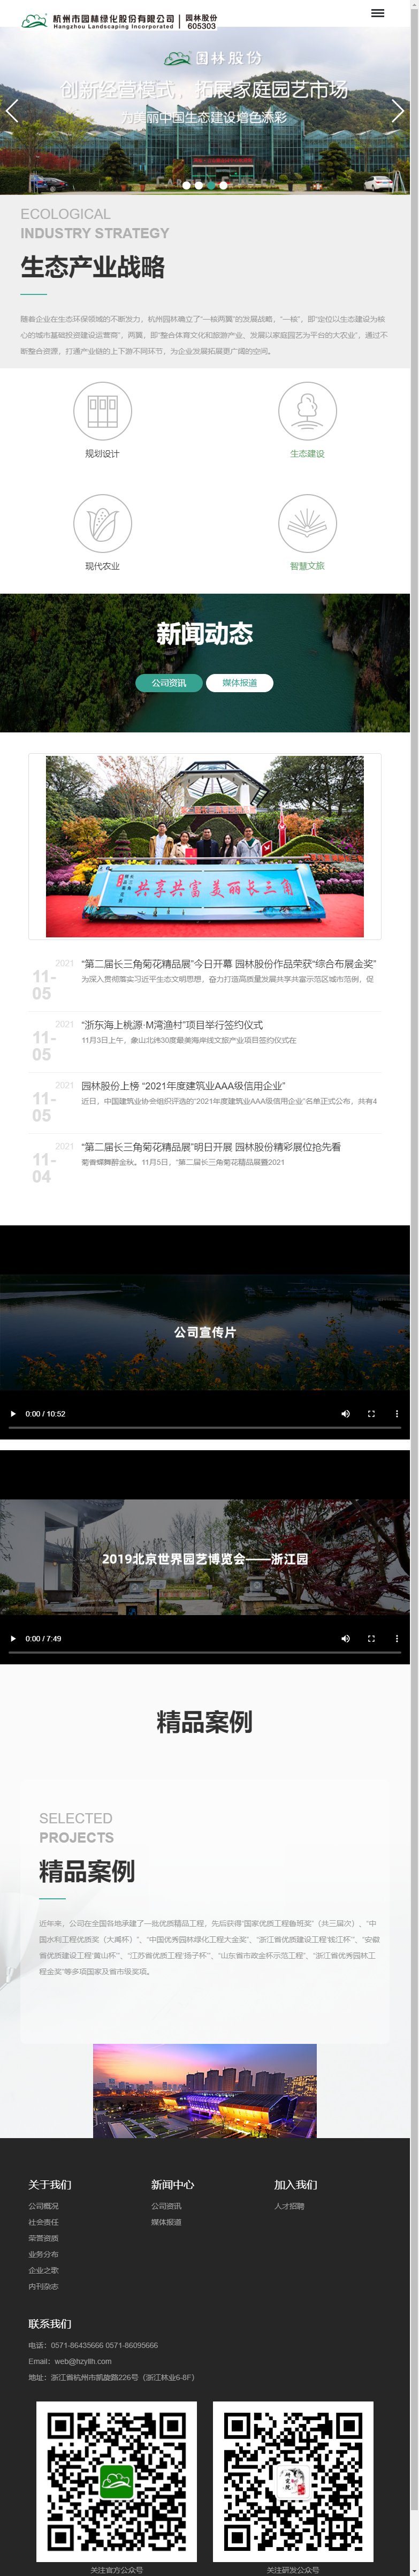 杭州市园林绿化股份有限公司网站案例